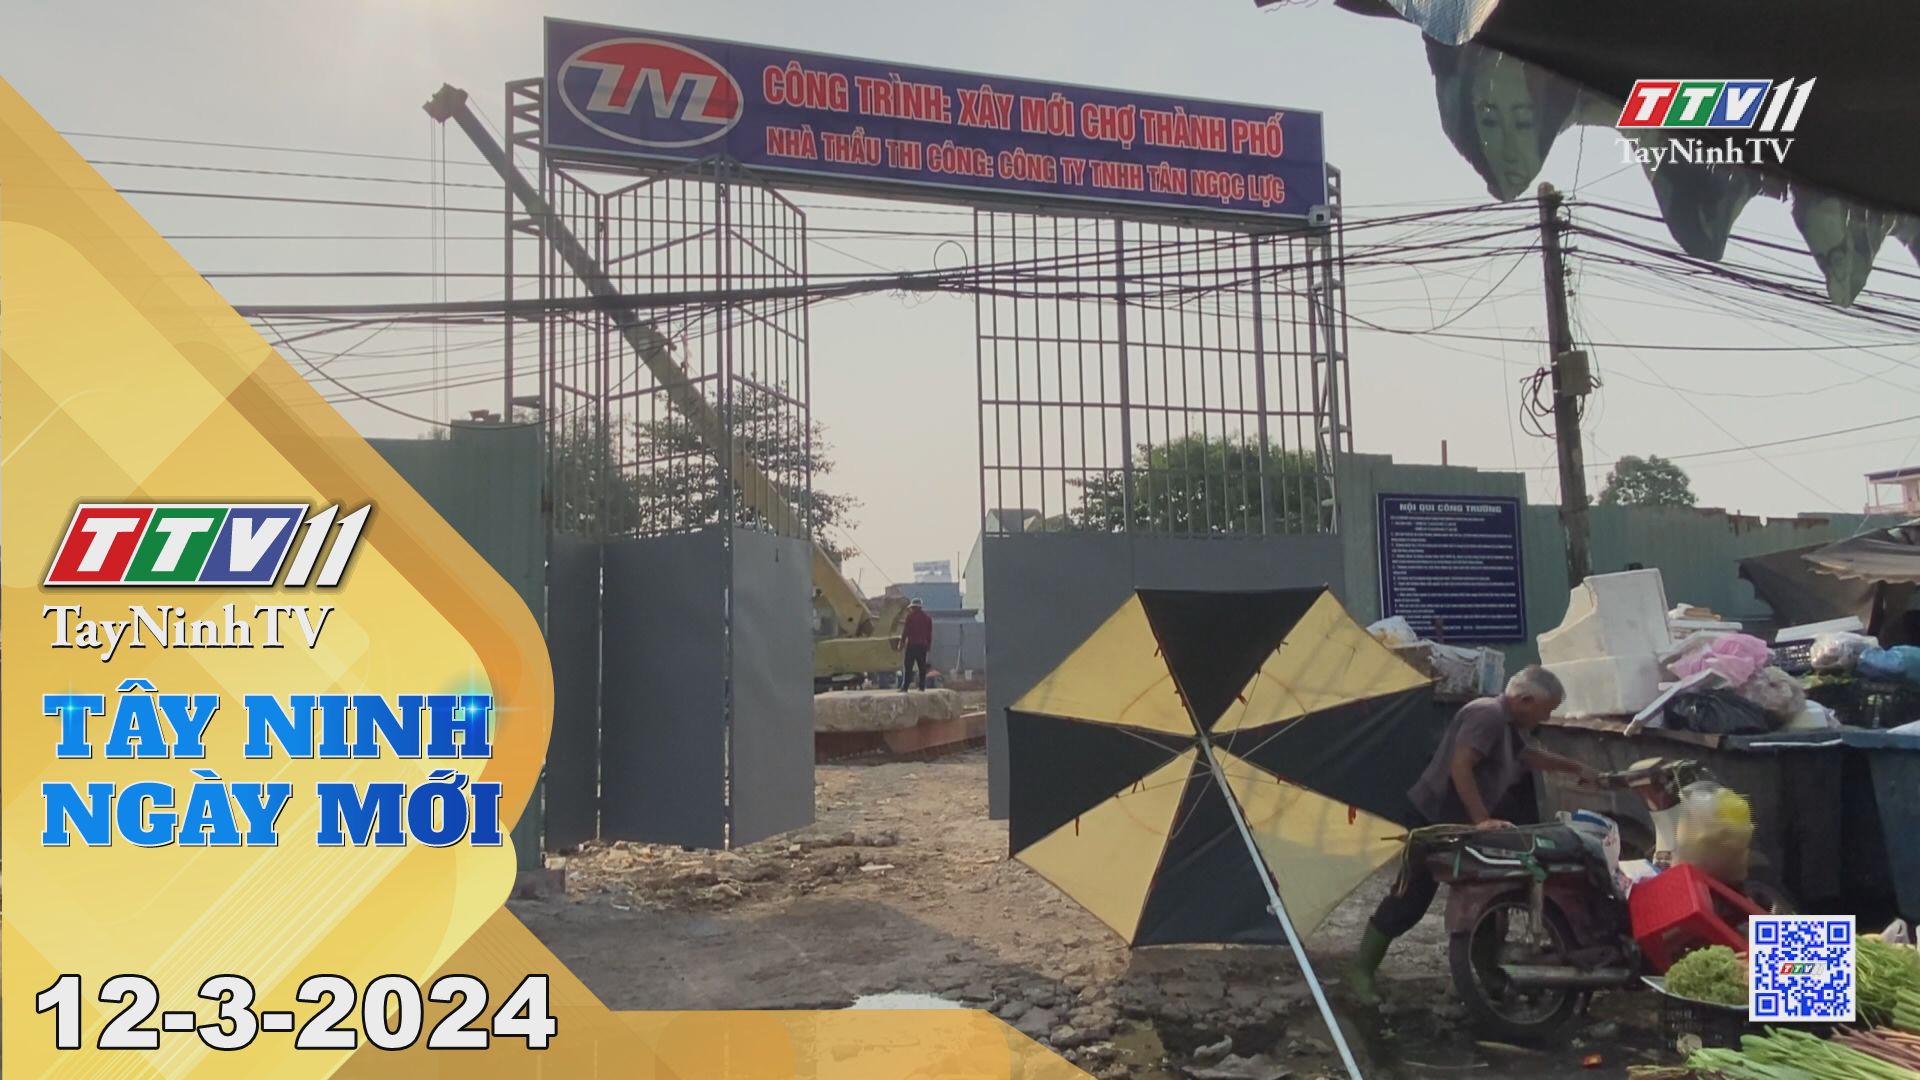 Tây Ninh ngày mới 12-3-2024 | Tin tức hôm nay | TayNinhTV